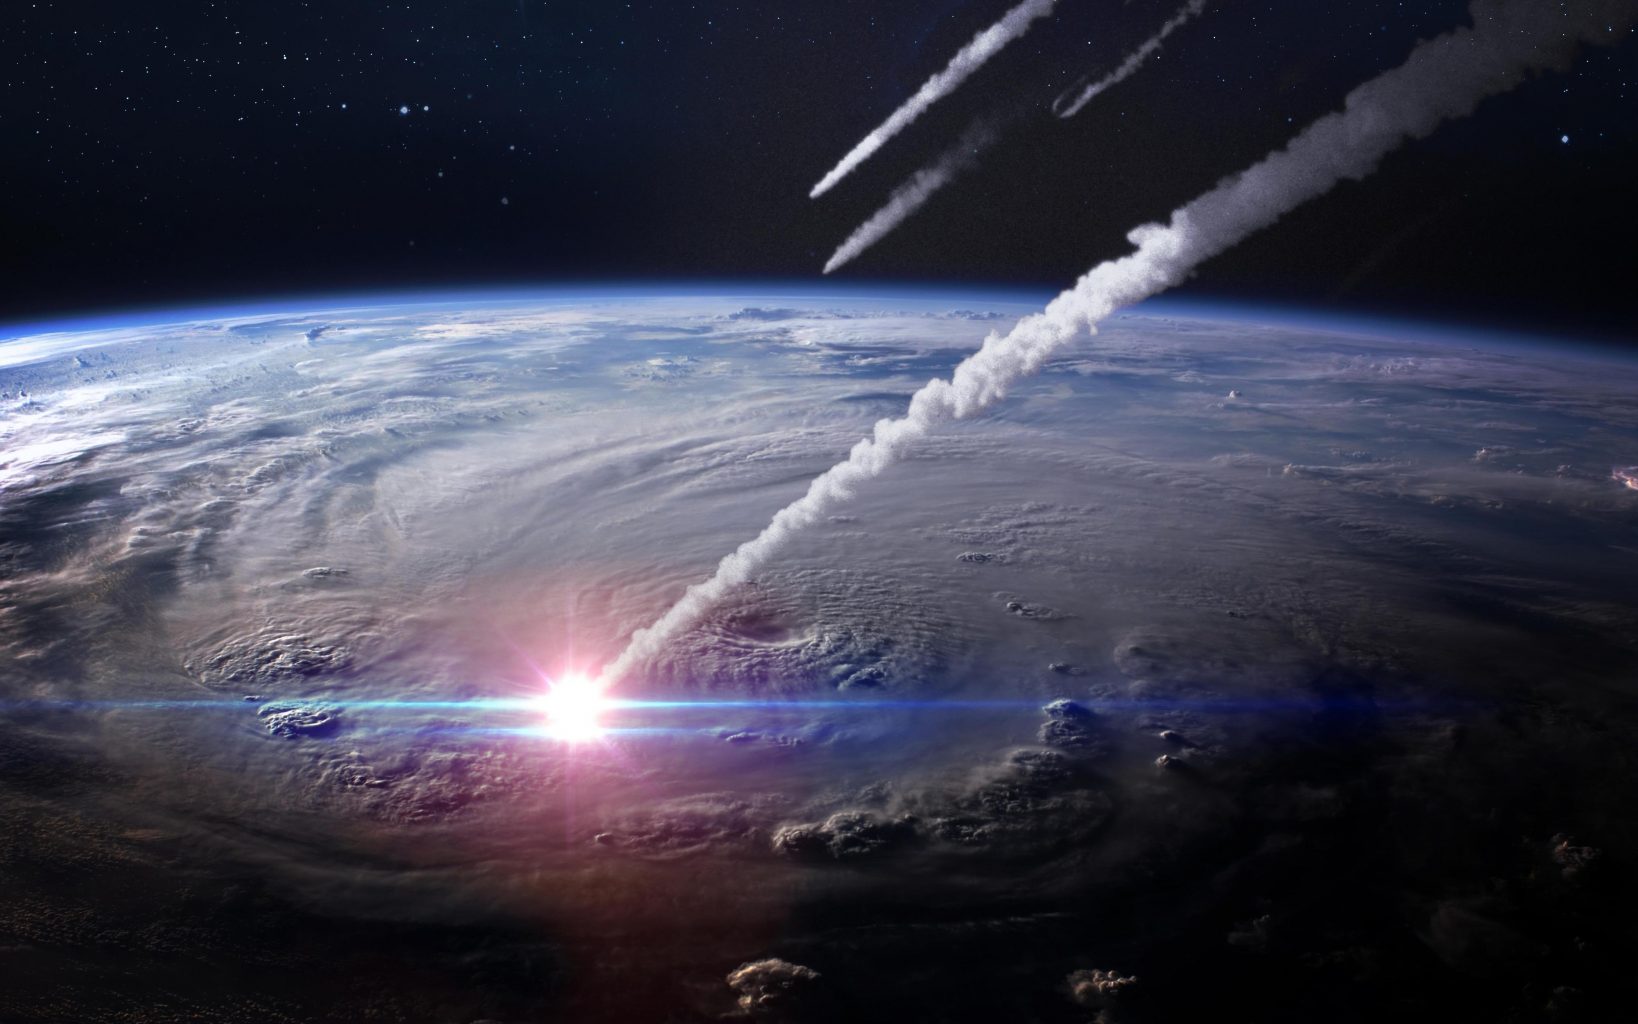 Метеорит в атмосфере